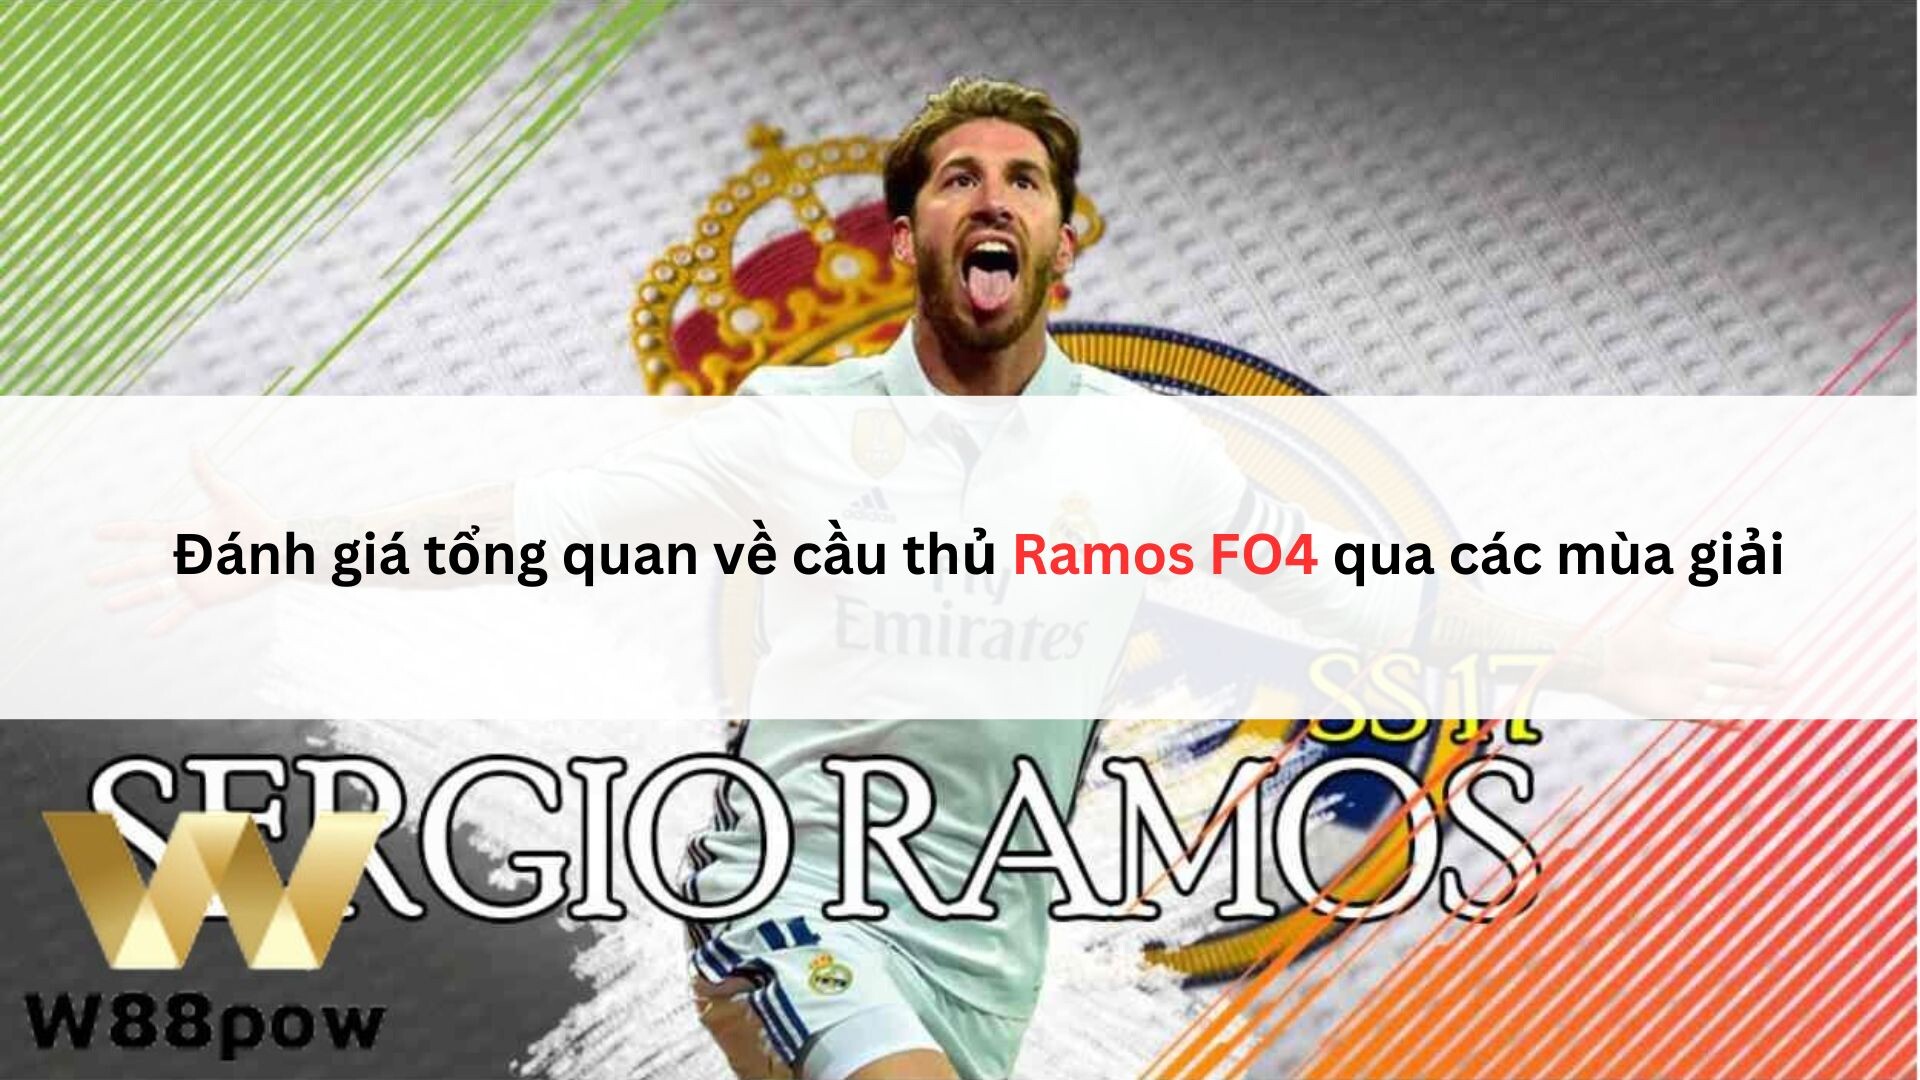 Đánh Giá Tổng Quan Về Cầu Thủ Ramos Fo4 Qua Các Mùa Giải